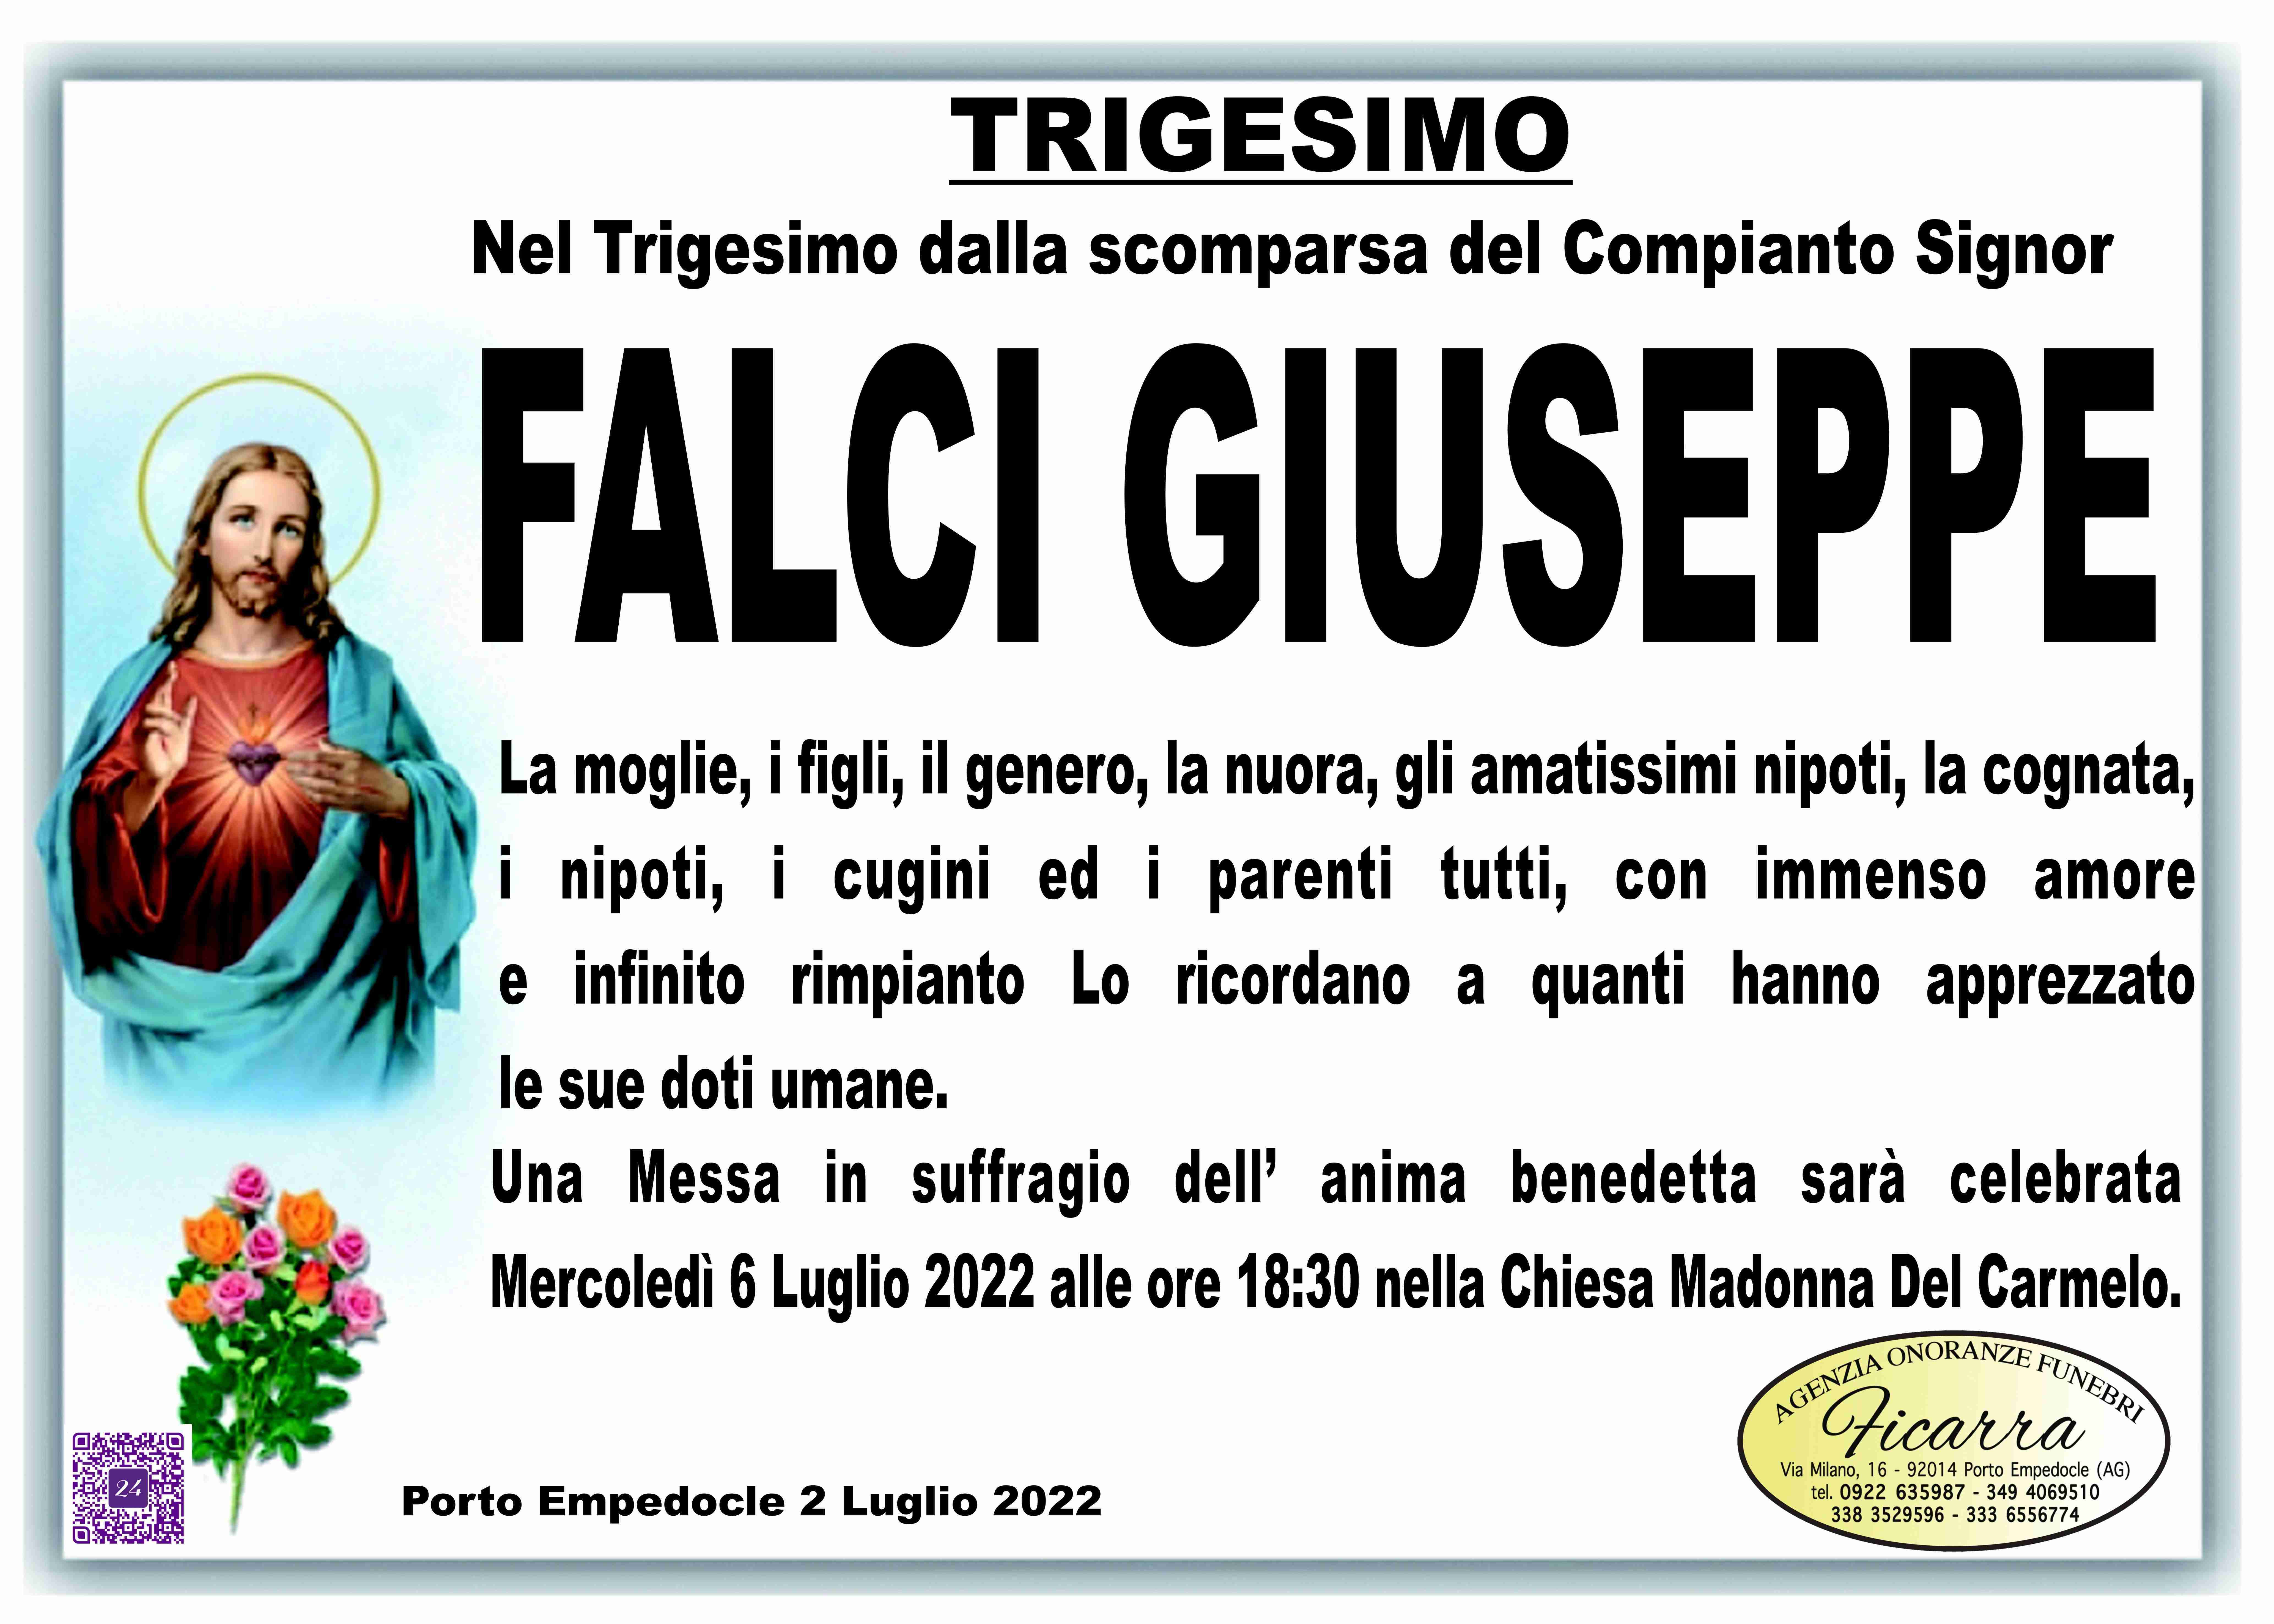 Giuseppe Falci